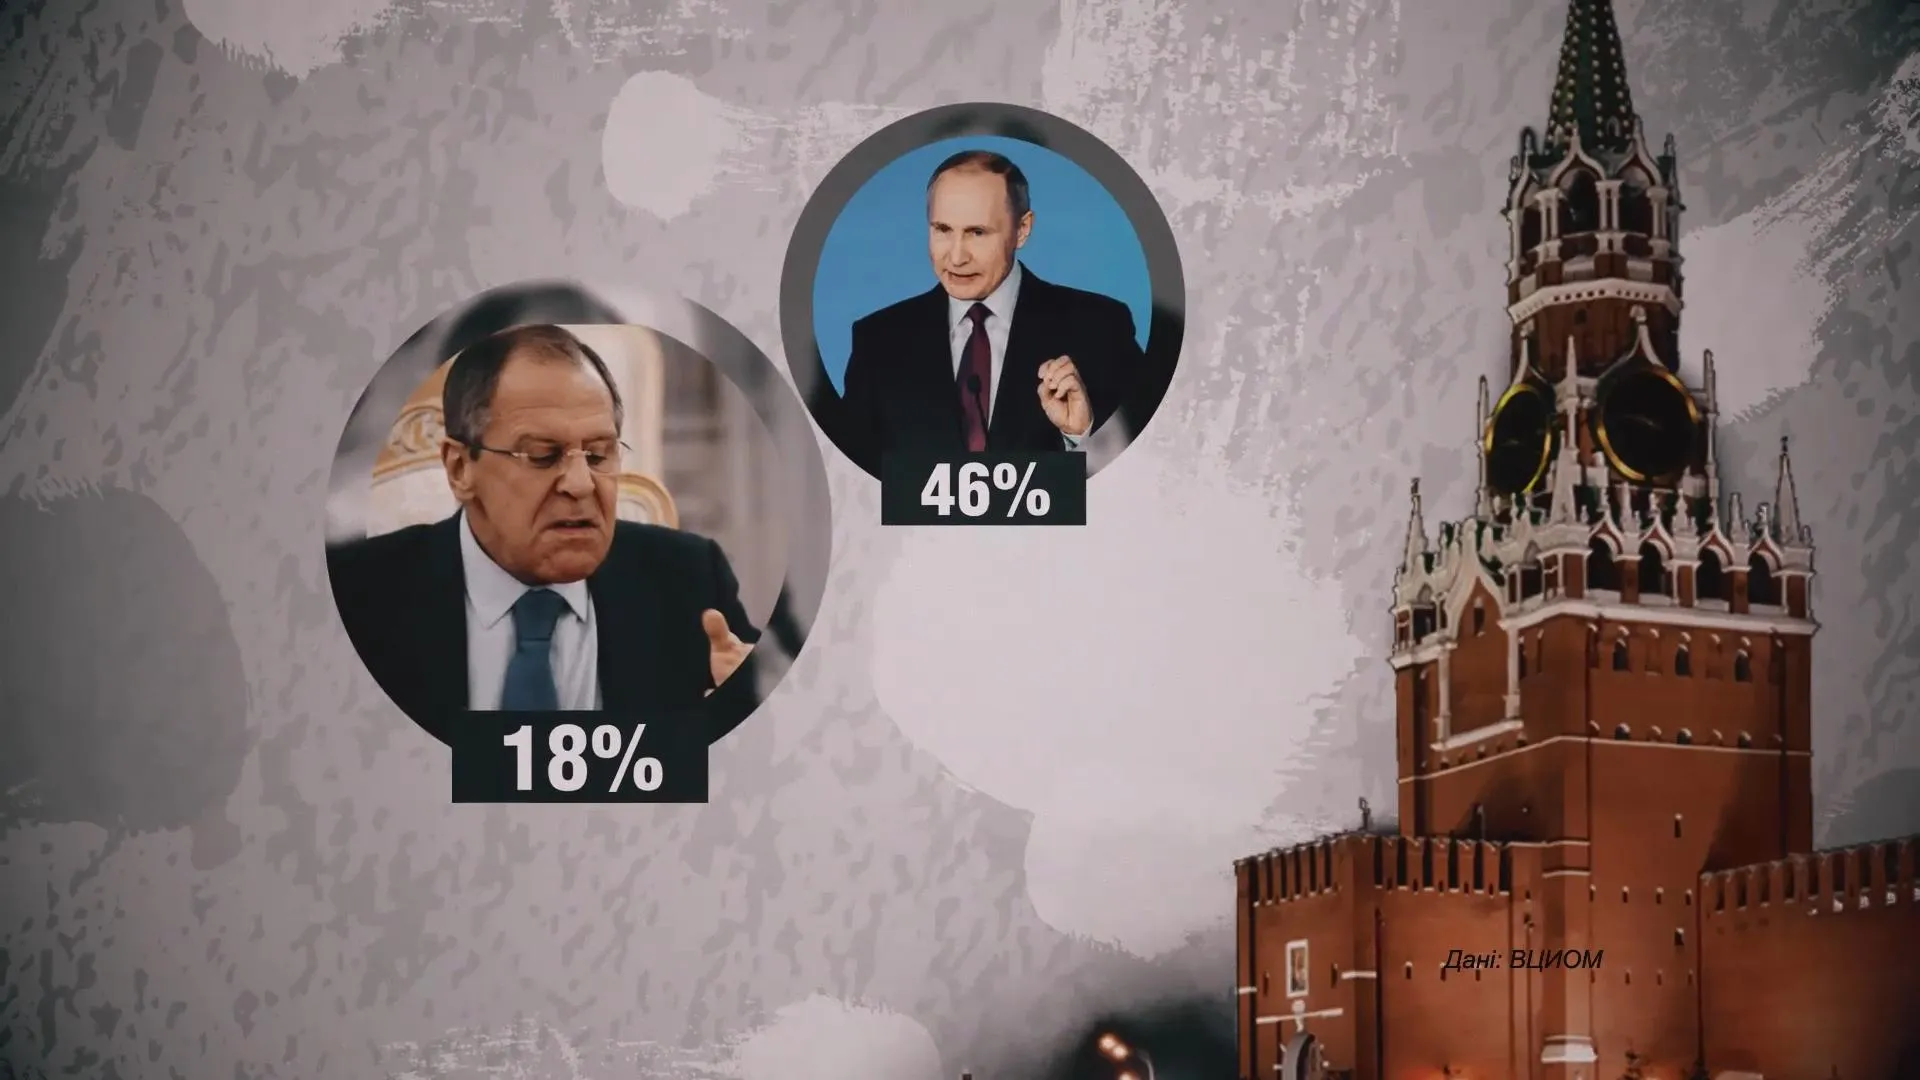 Найпопулярніший політик 2018 року Володимир Путін